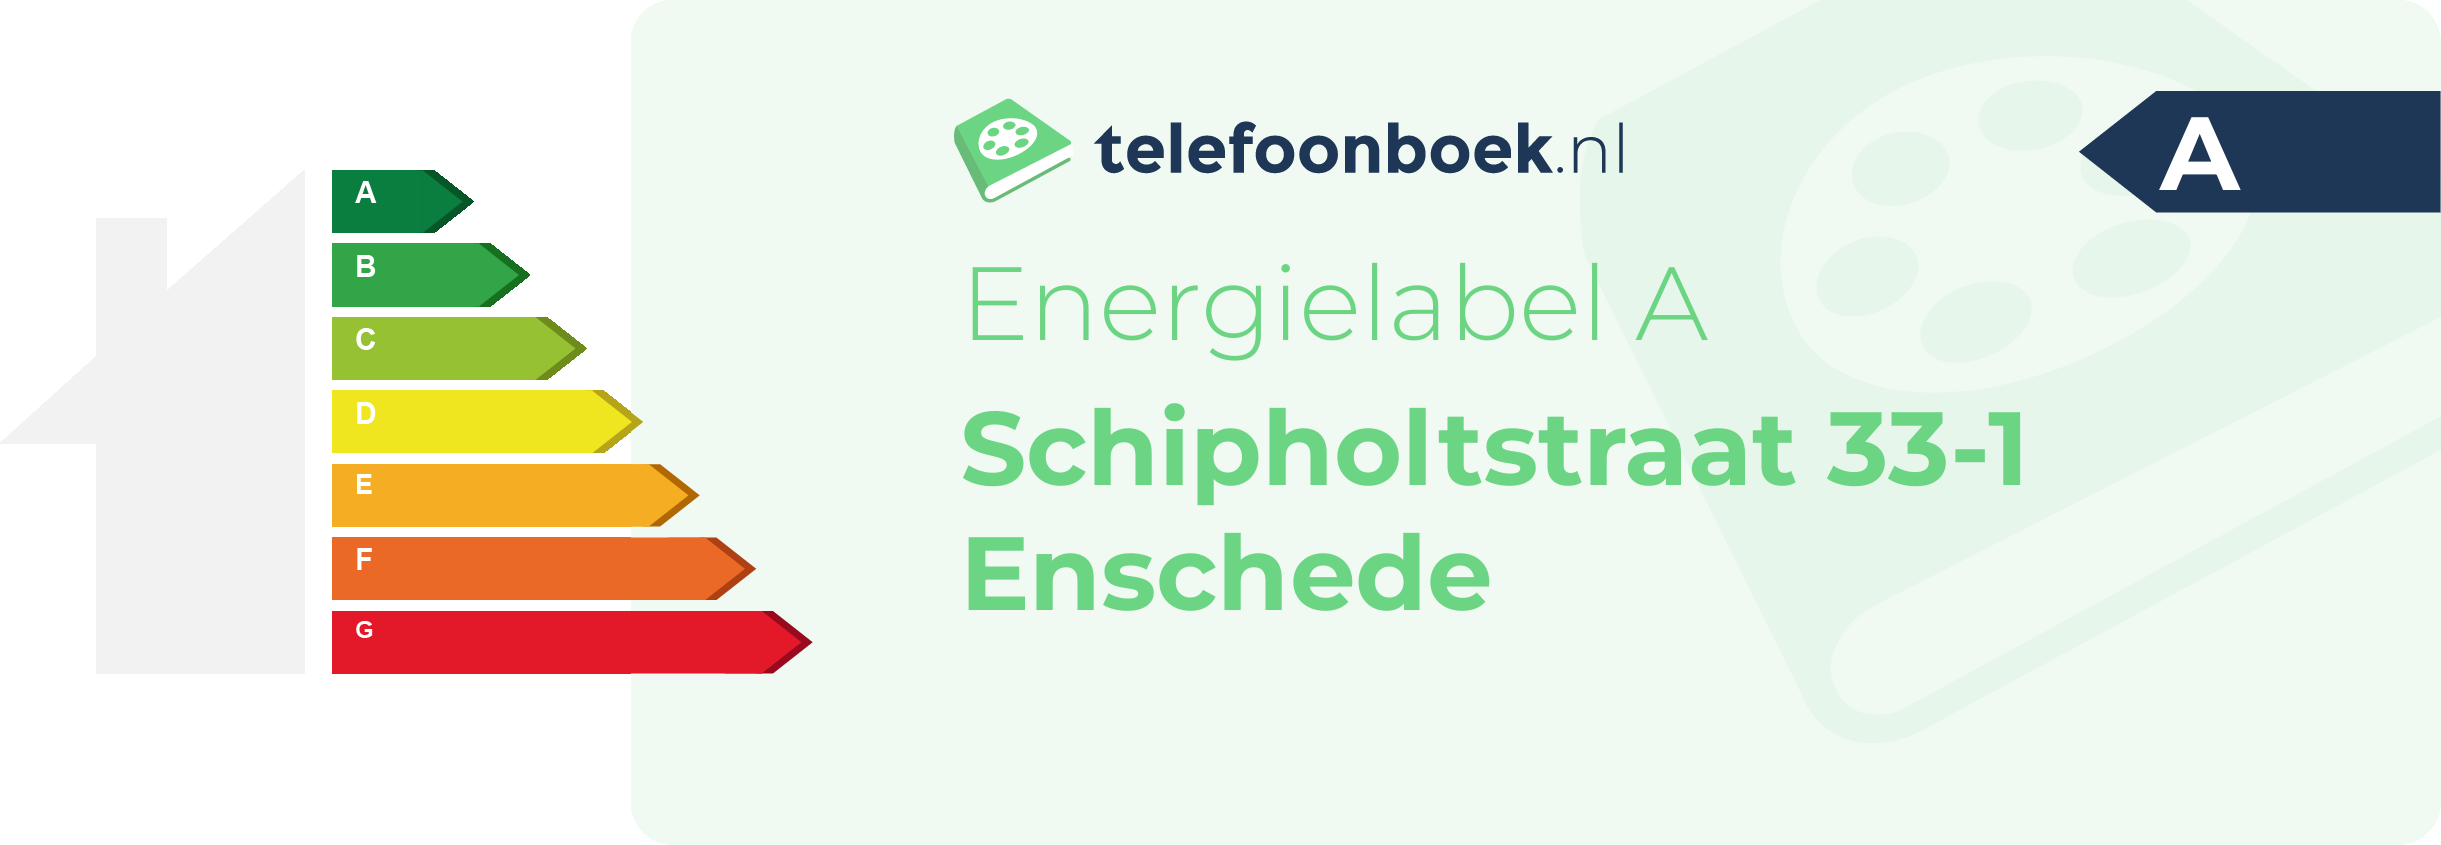 Energielabel Schipholtstraat 33-1 Enschede